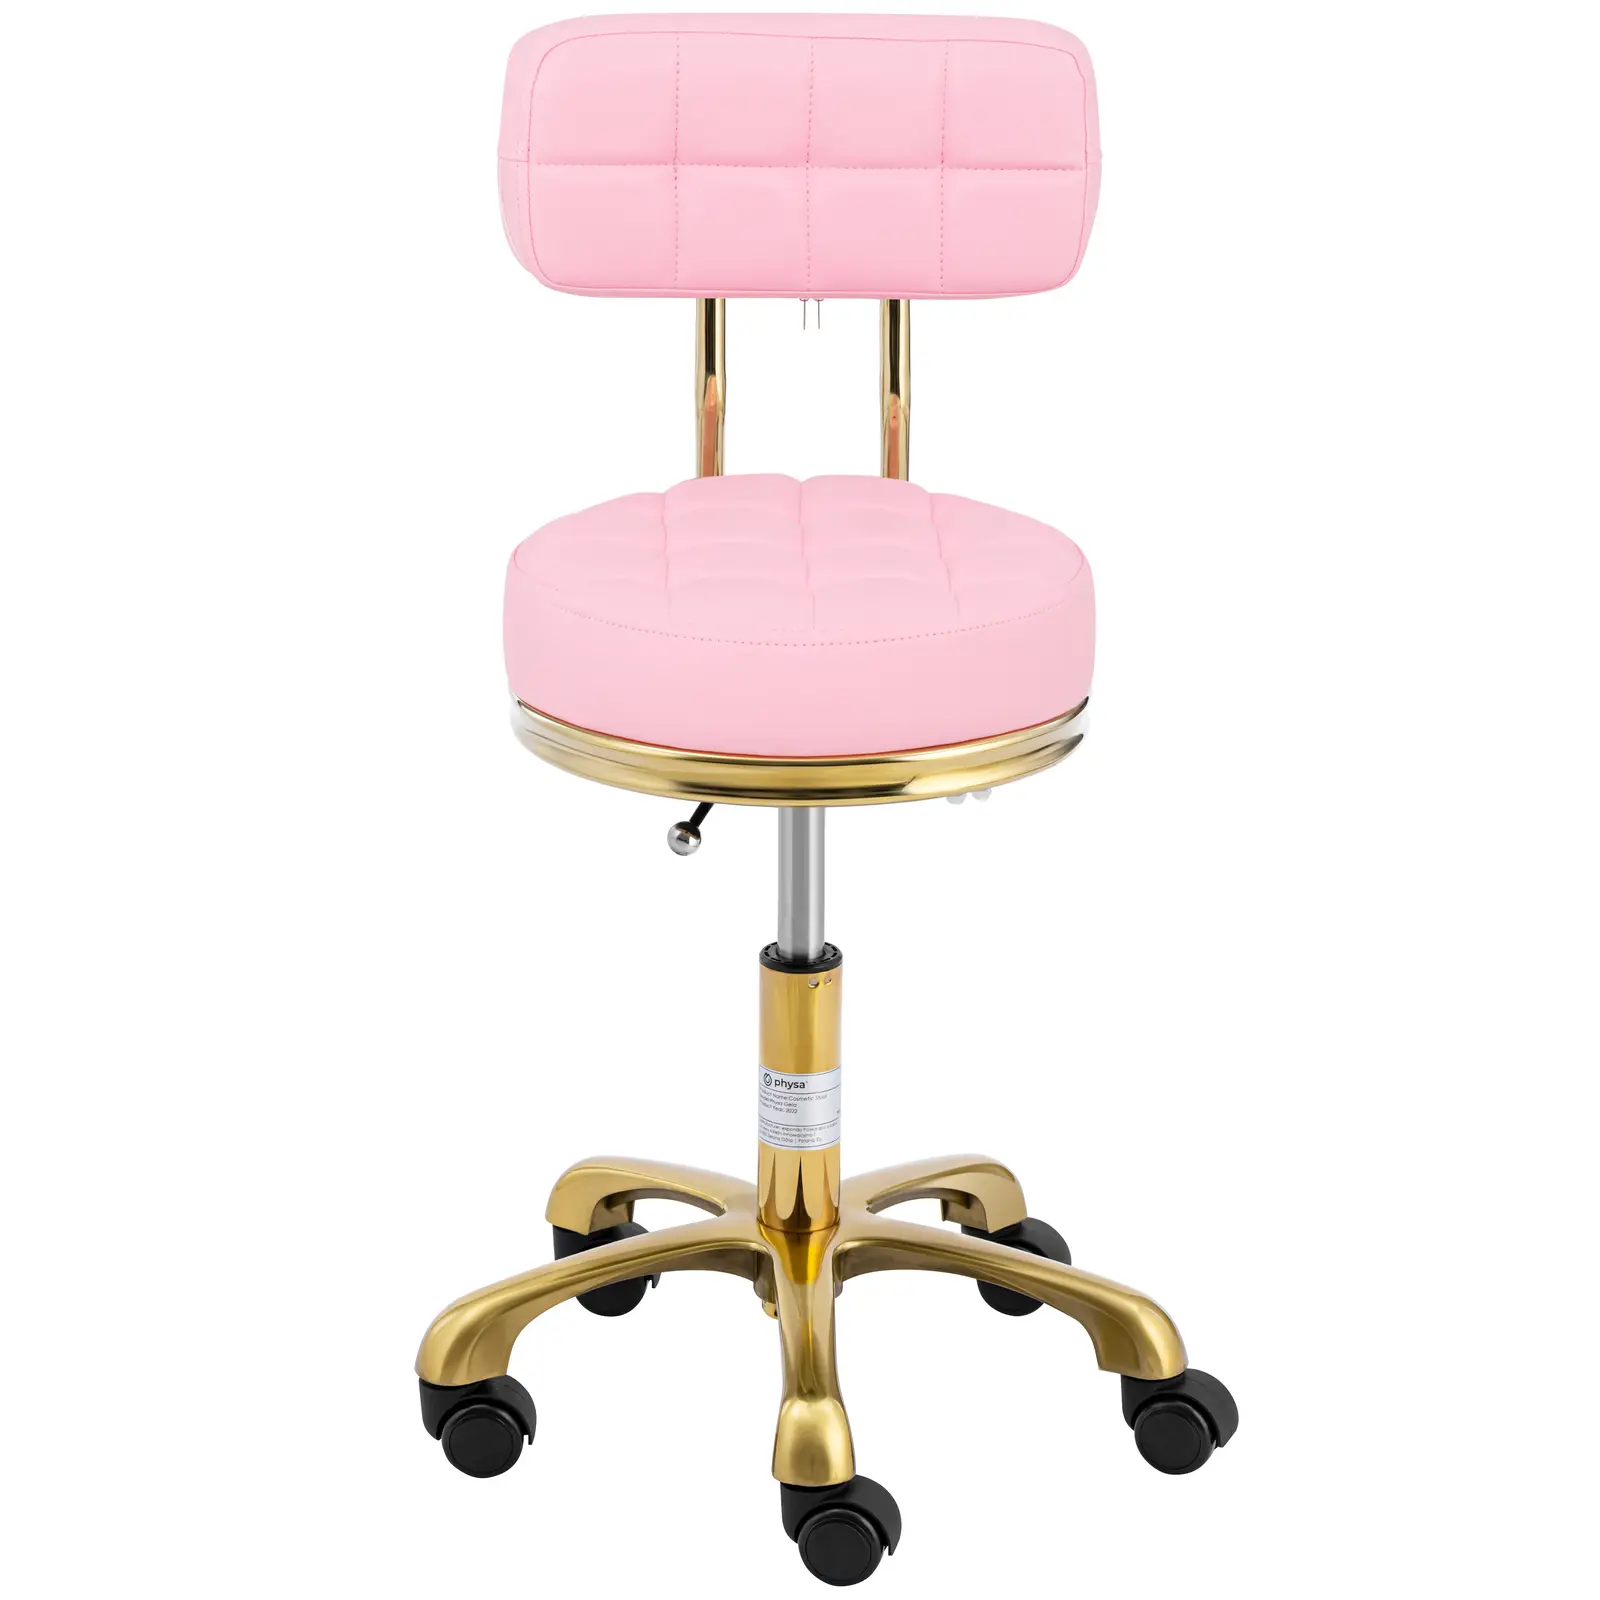 Premični stolček z naslonom - 51 - 66 cm - 150 kg - svetlo roza/zlata